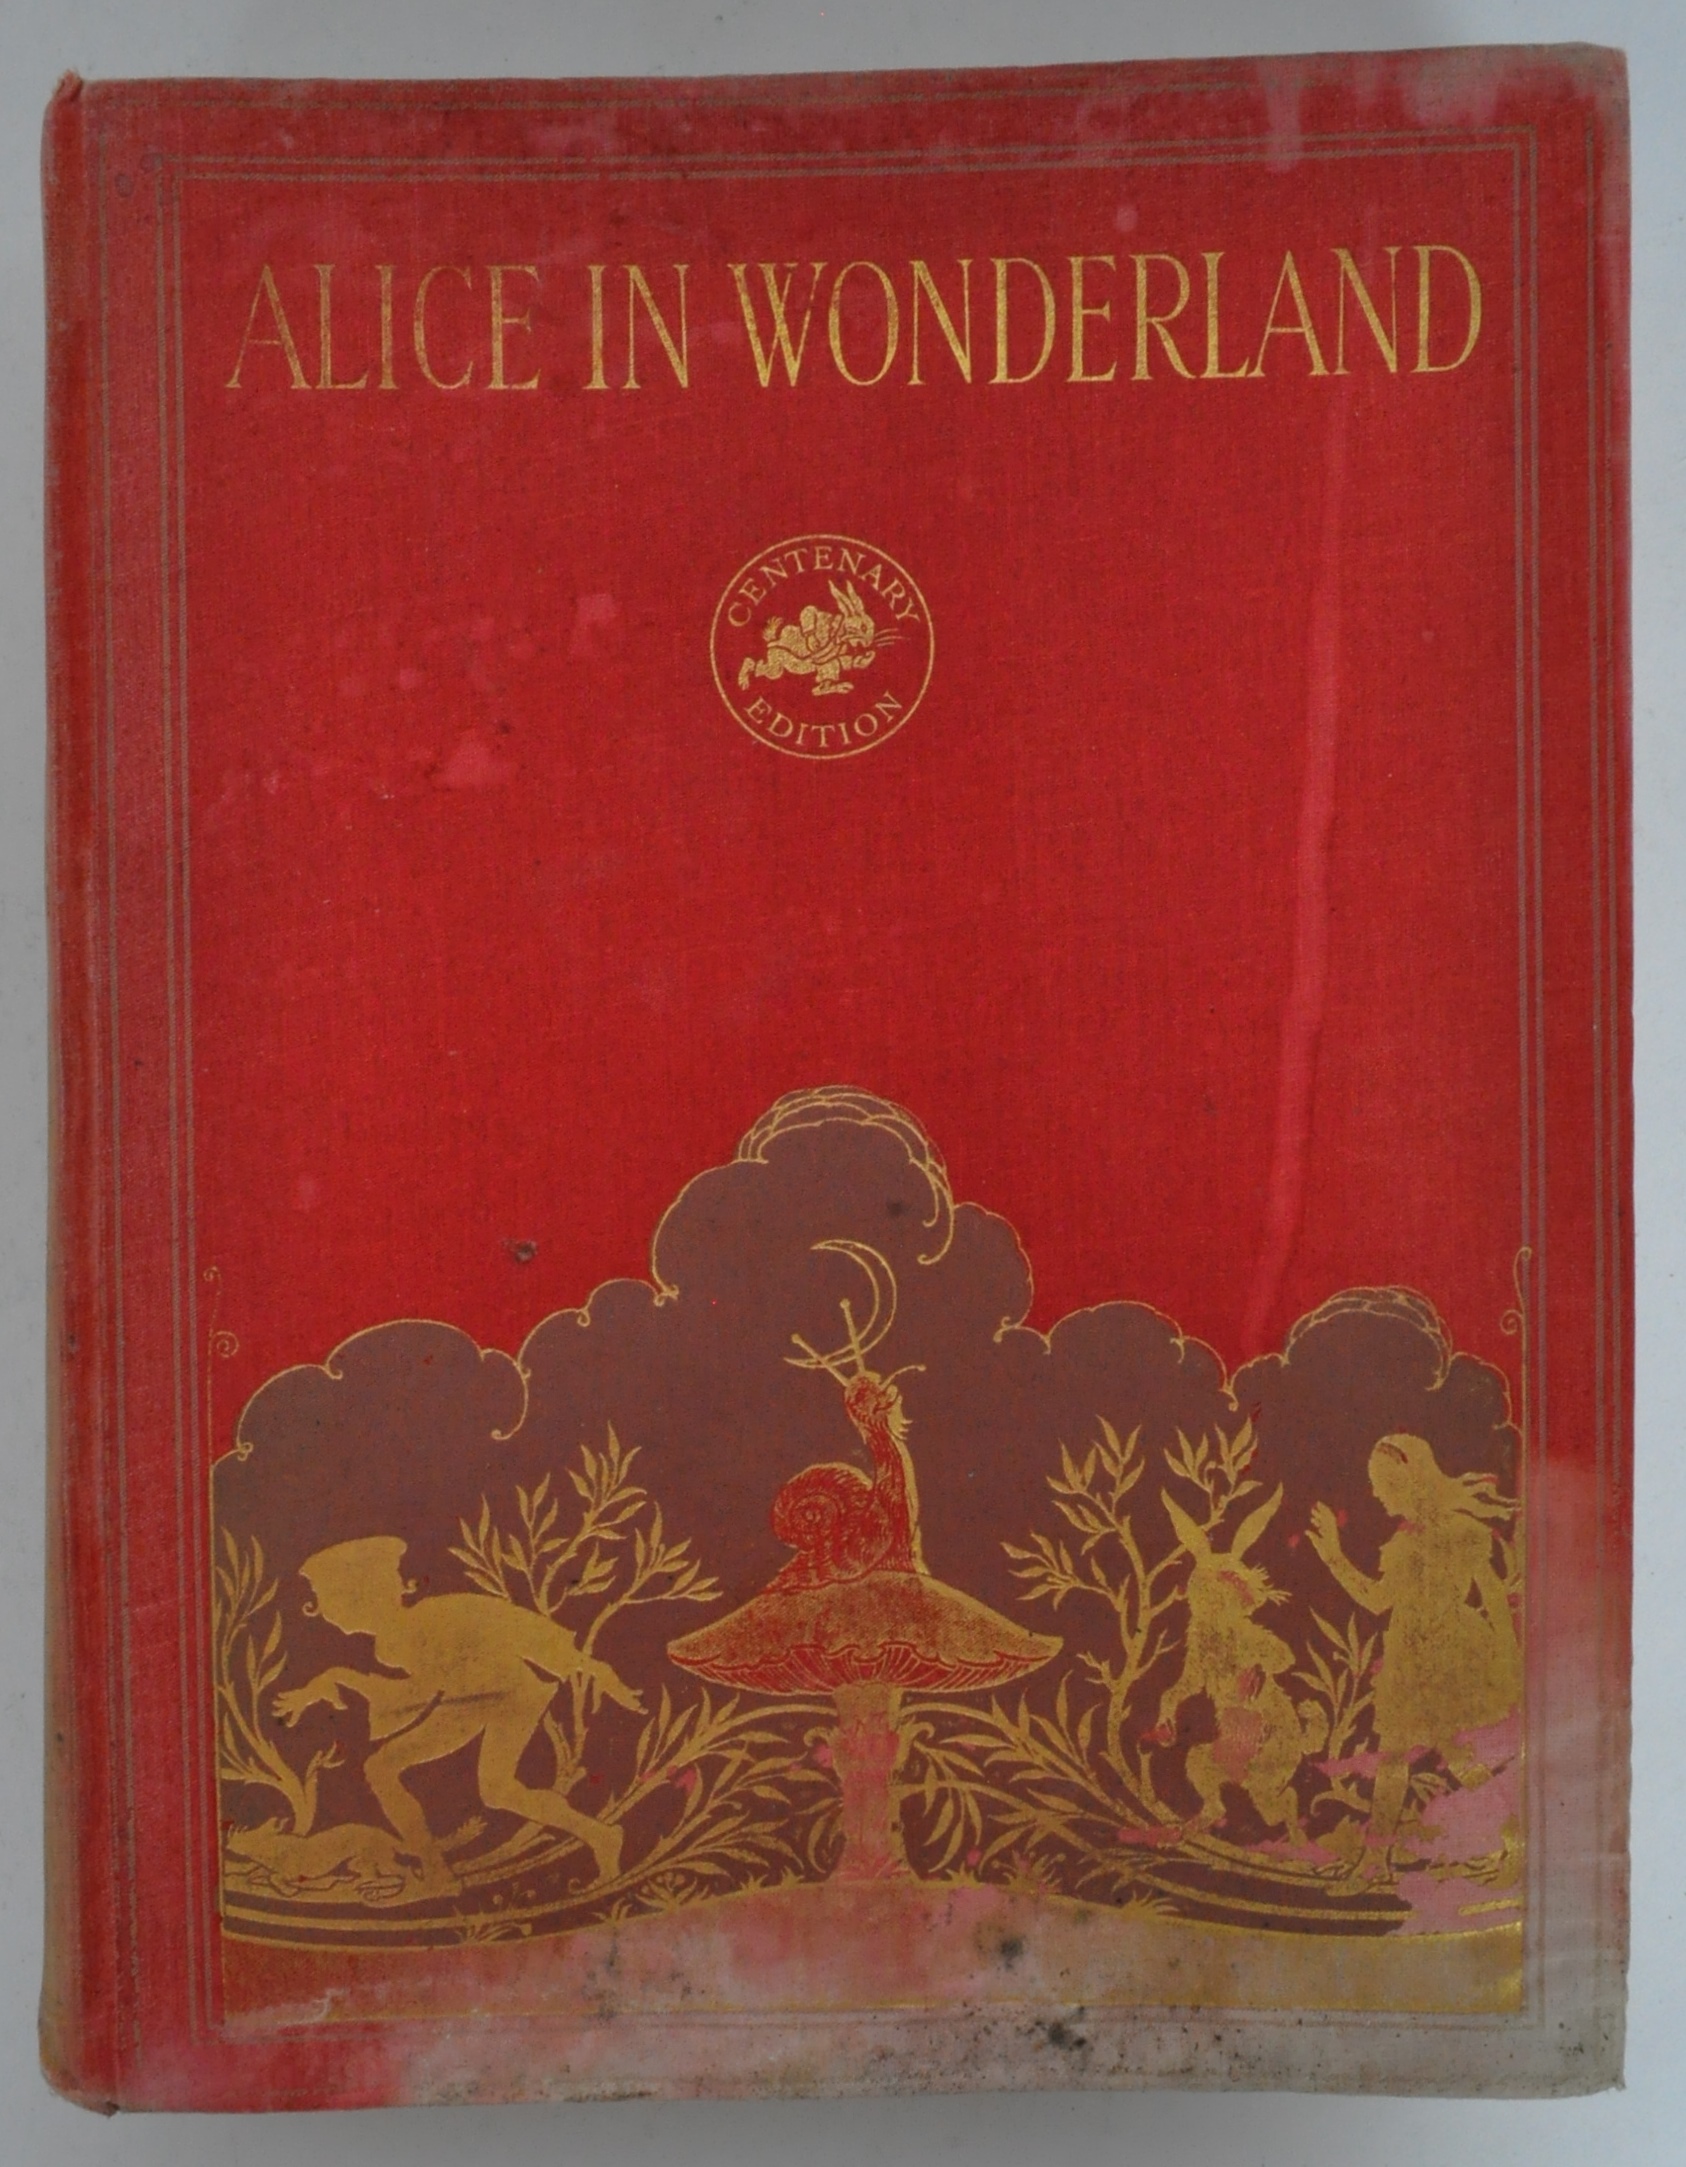 ALICE IN WONDERLAND - LEWIS CARROLL - GWYNEDD M. HUDSON BOOK